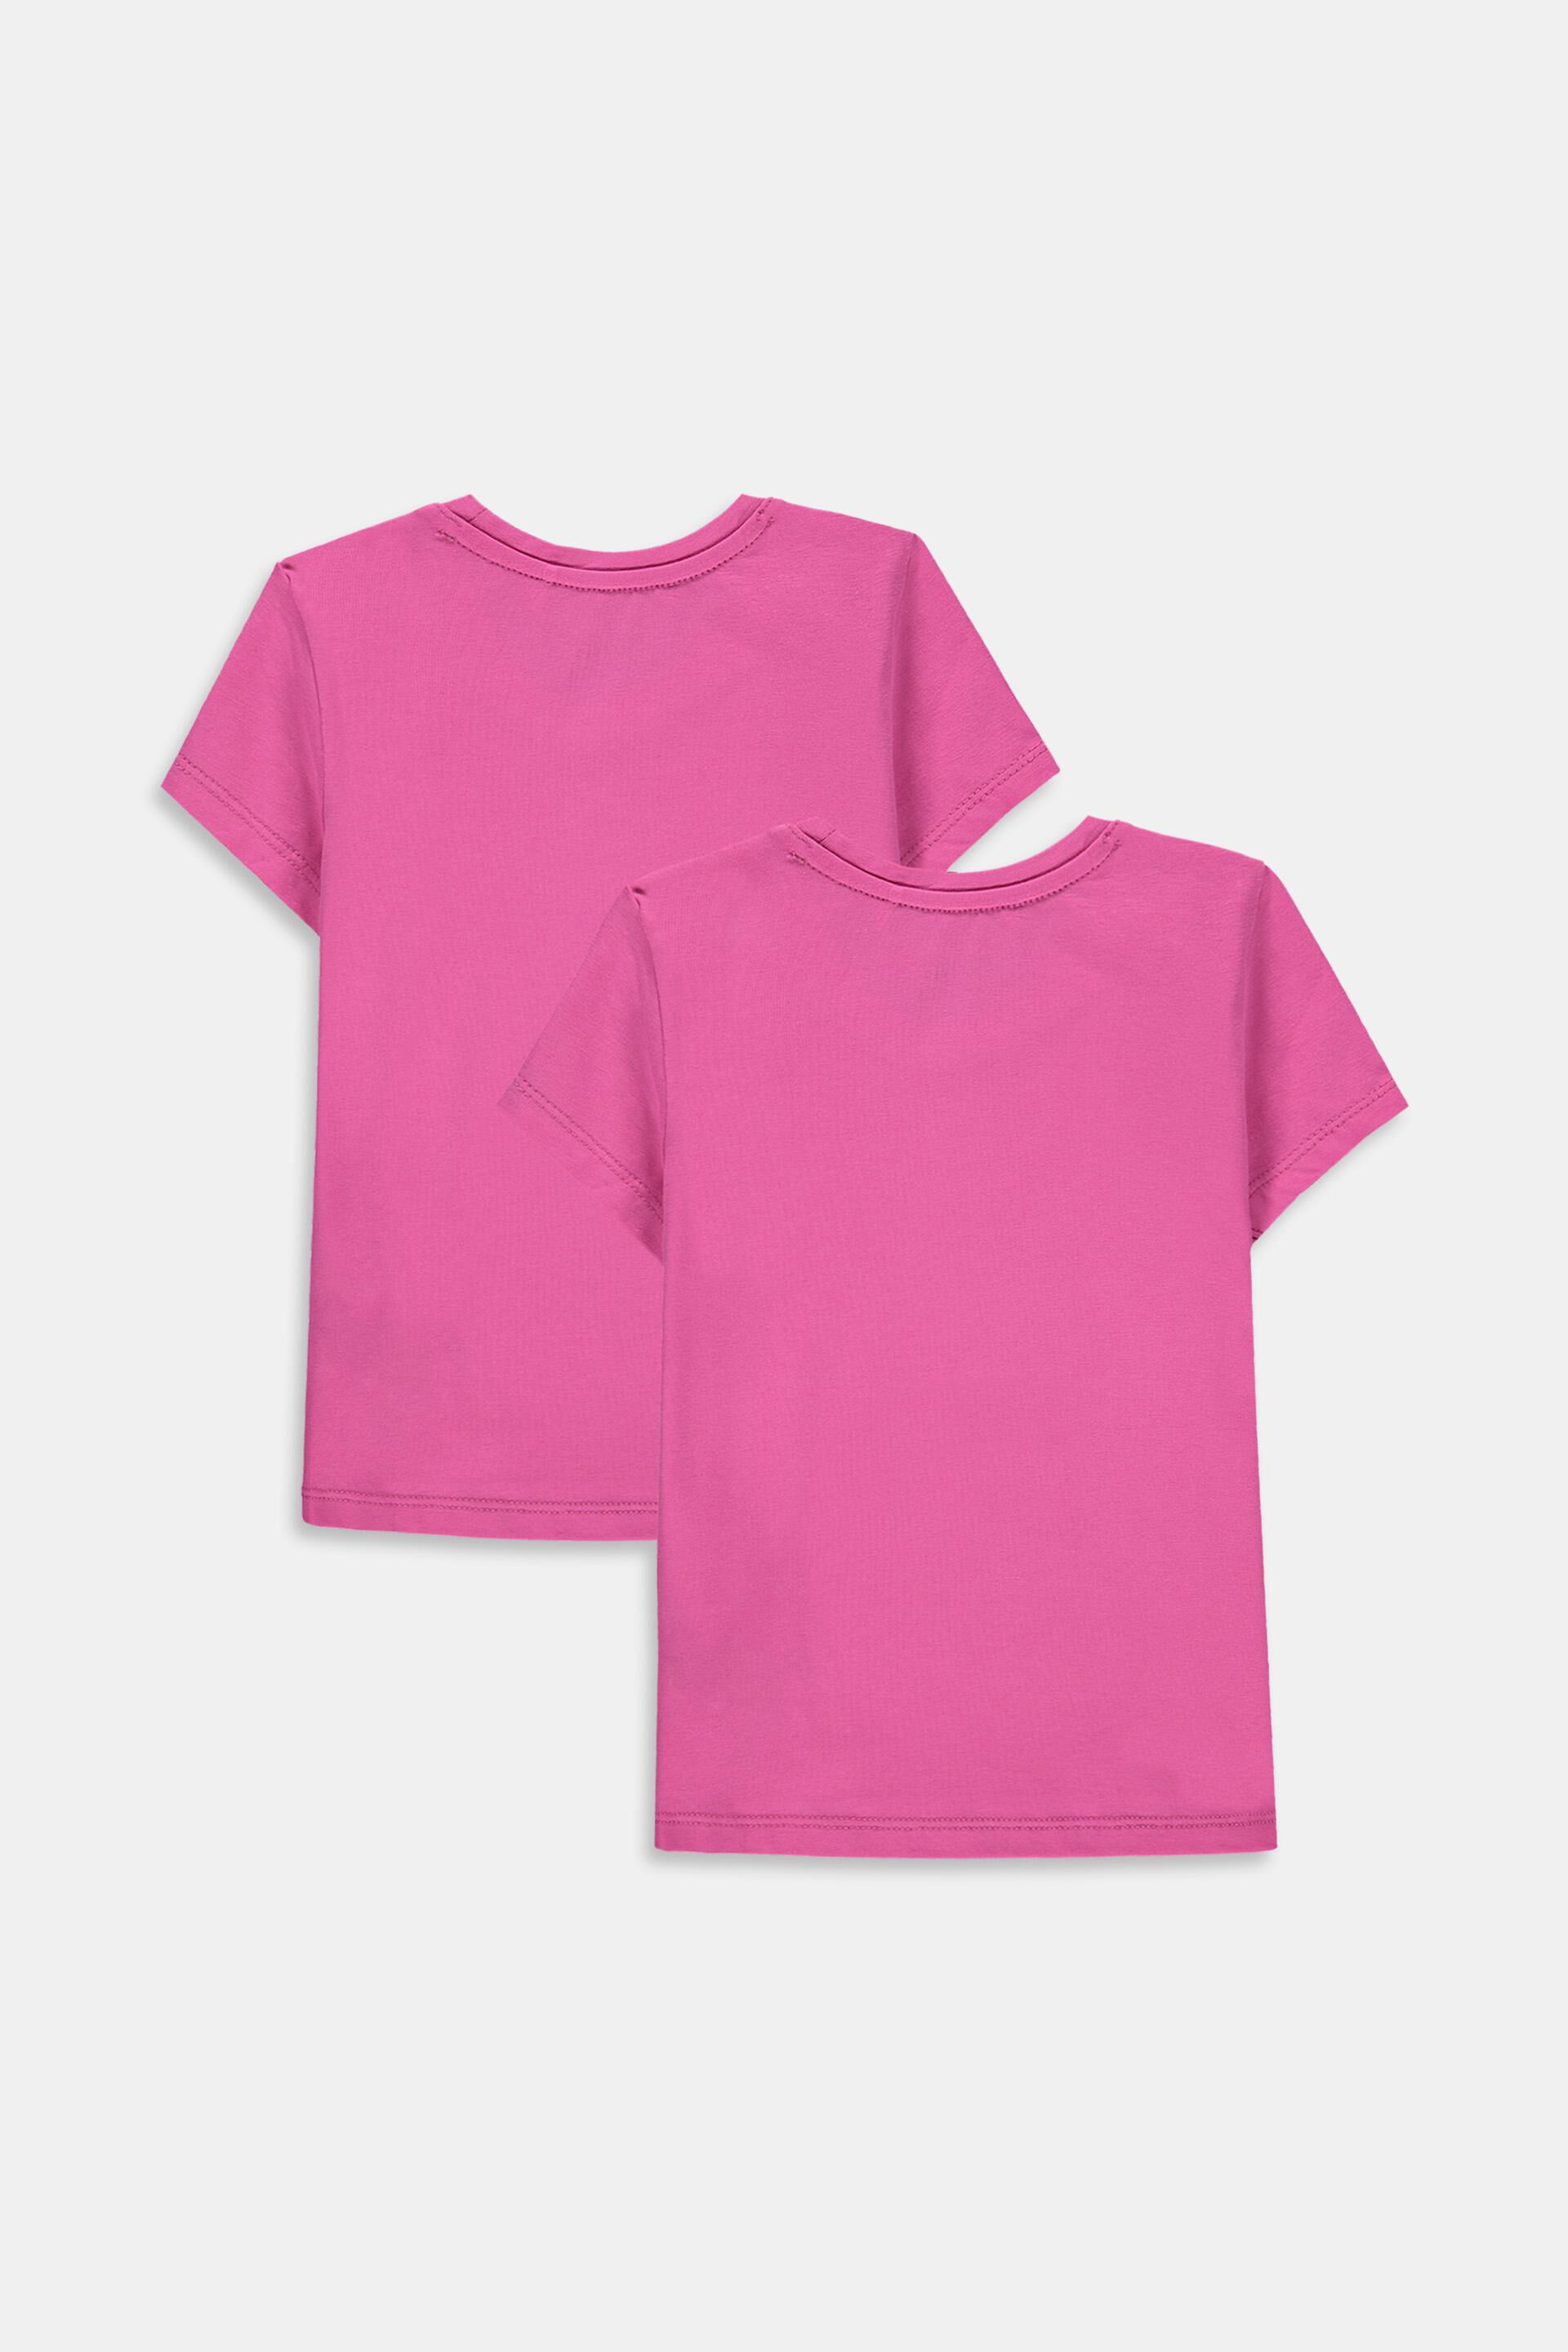 Baby Mädchen Shirts Hosen rosa Kleidung Oberteile Bekleidung Pullover Blusen 